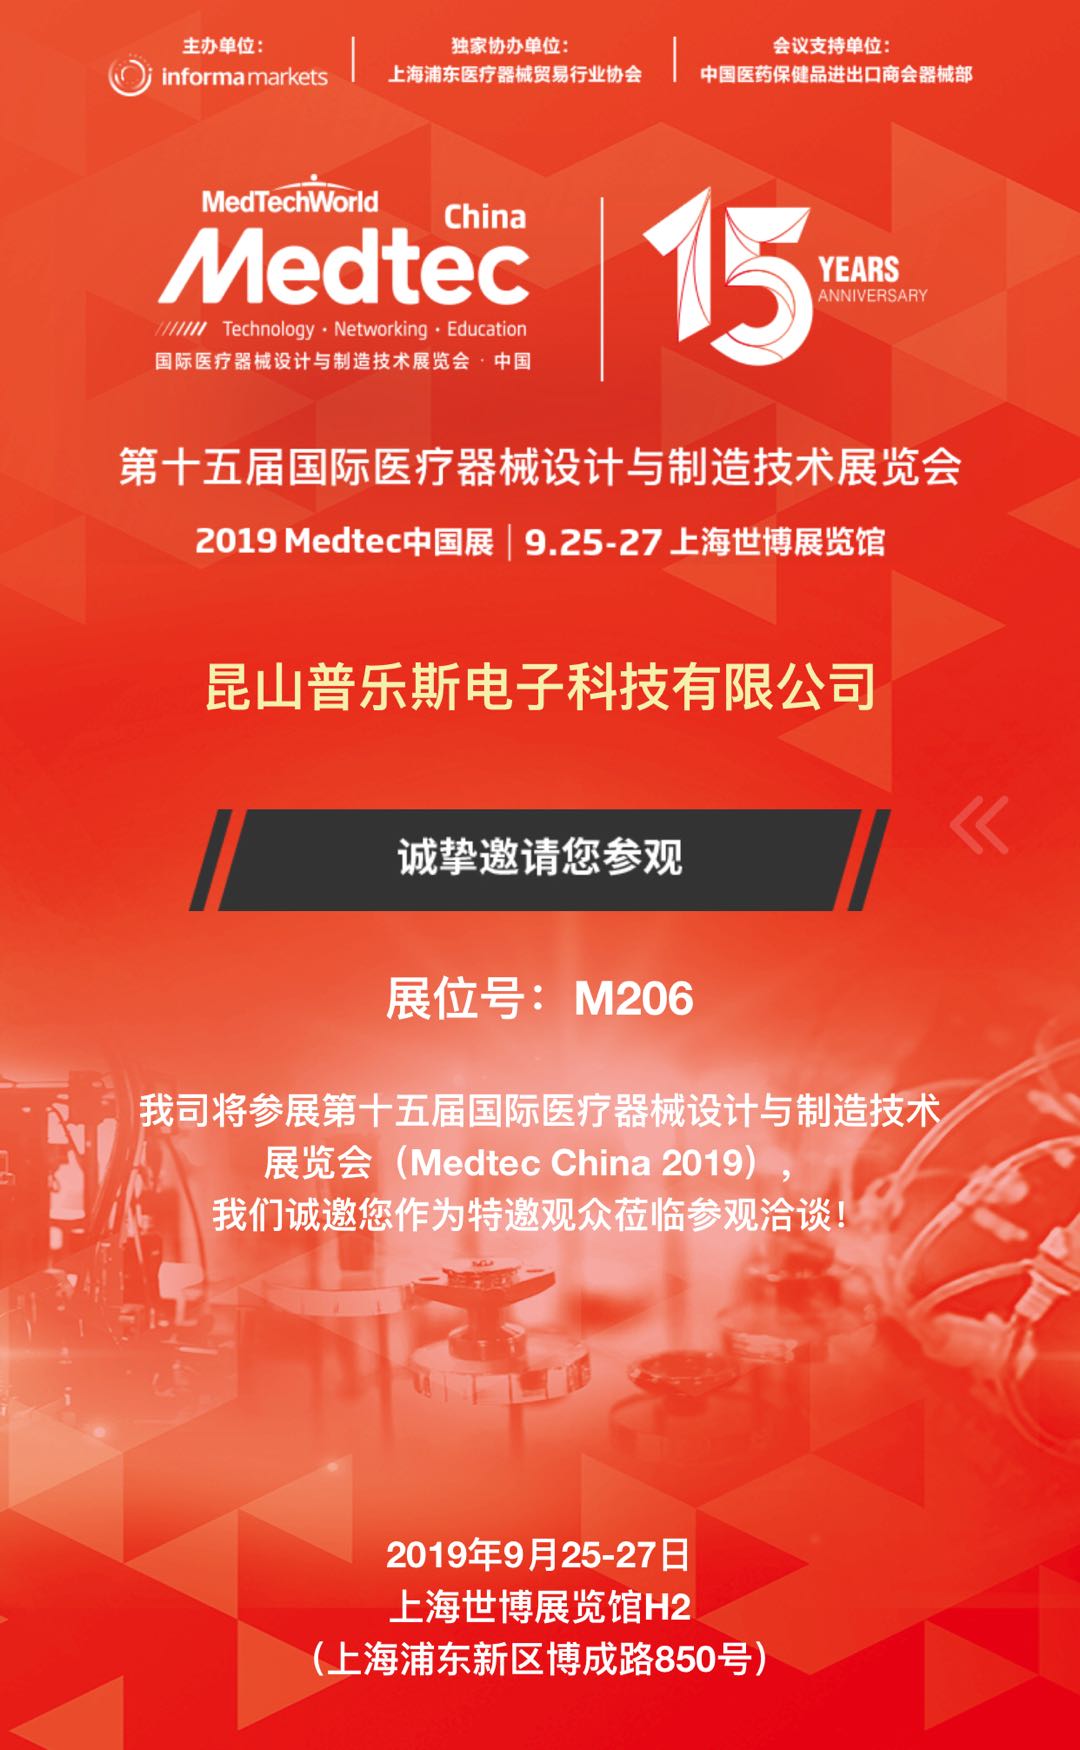 普乐斯等离子清洗机邀您共聚2019上海Medtec中国展